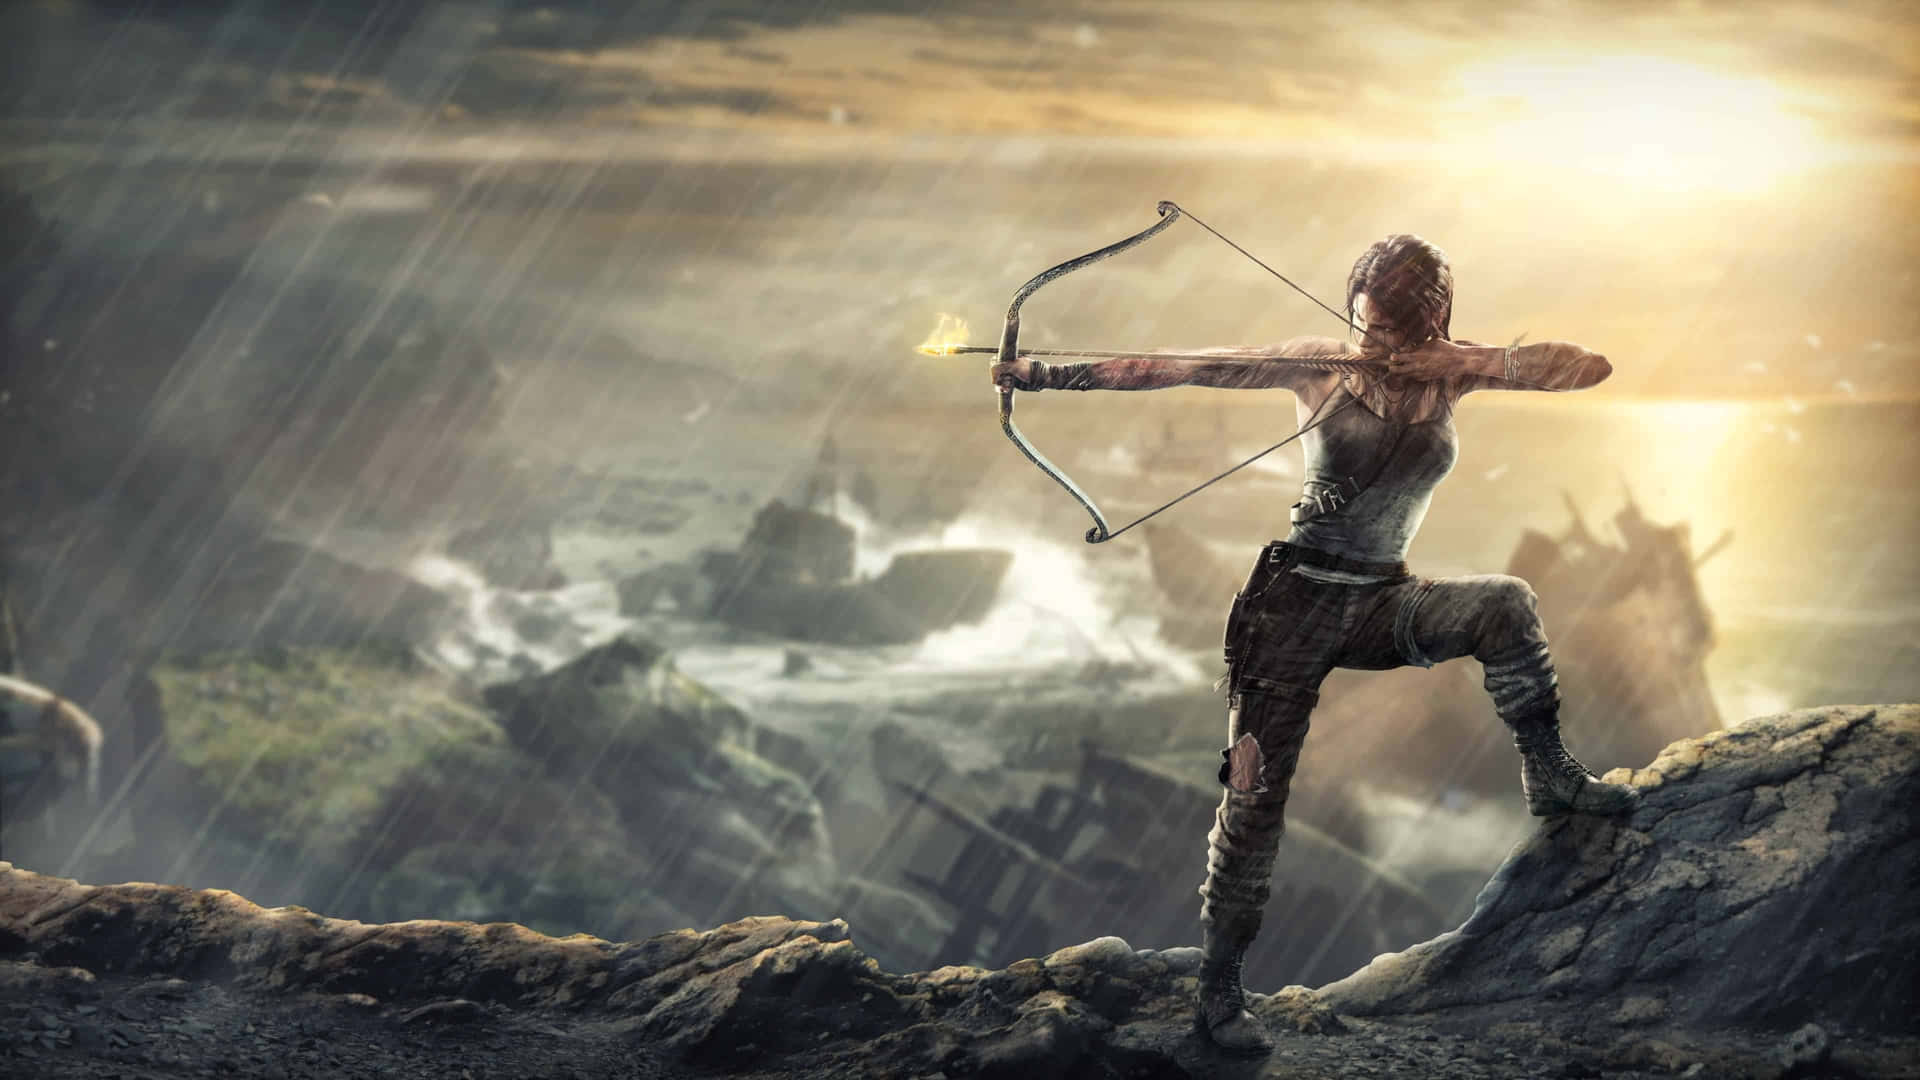 Fondode Pantalla De Lara Croft Con Arco En 4k De Shadow Of The Tomb Raider